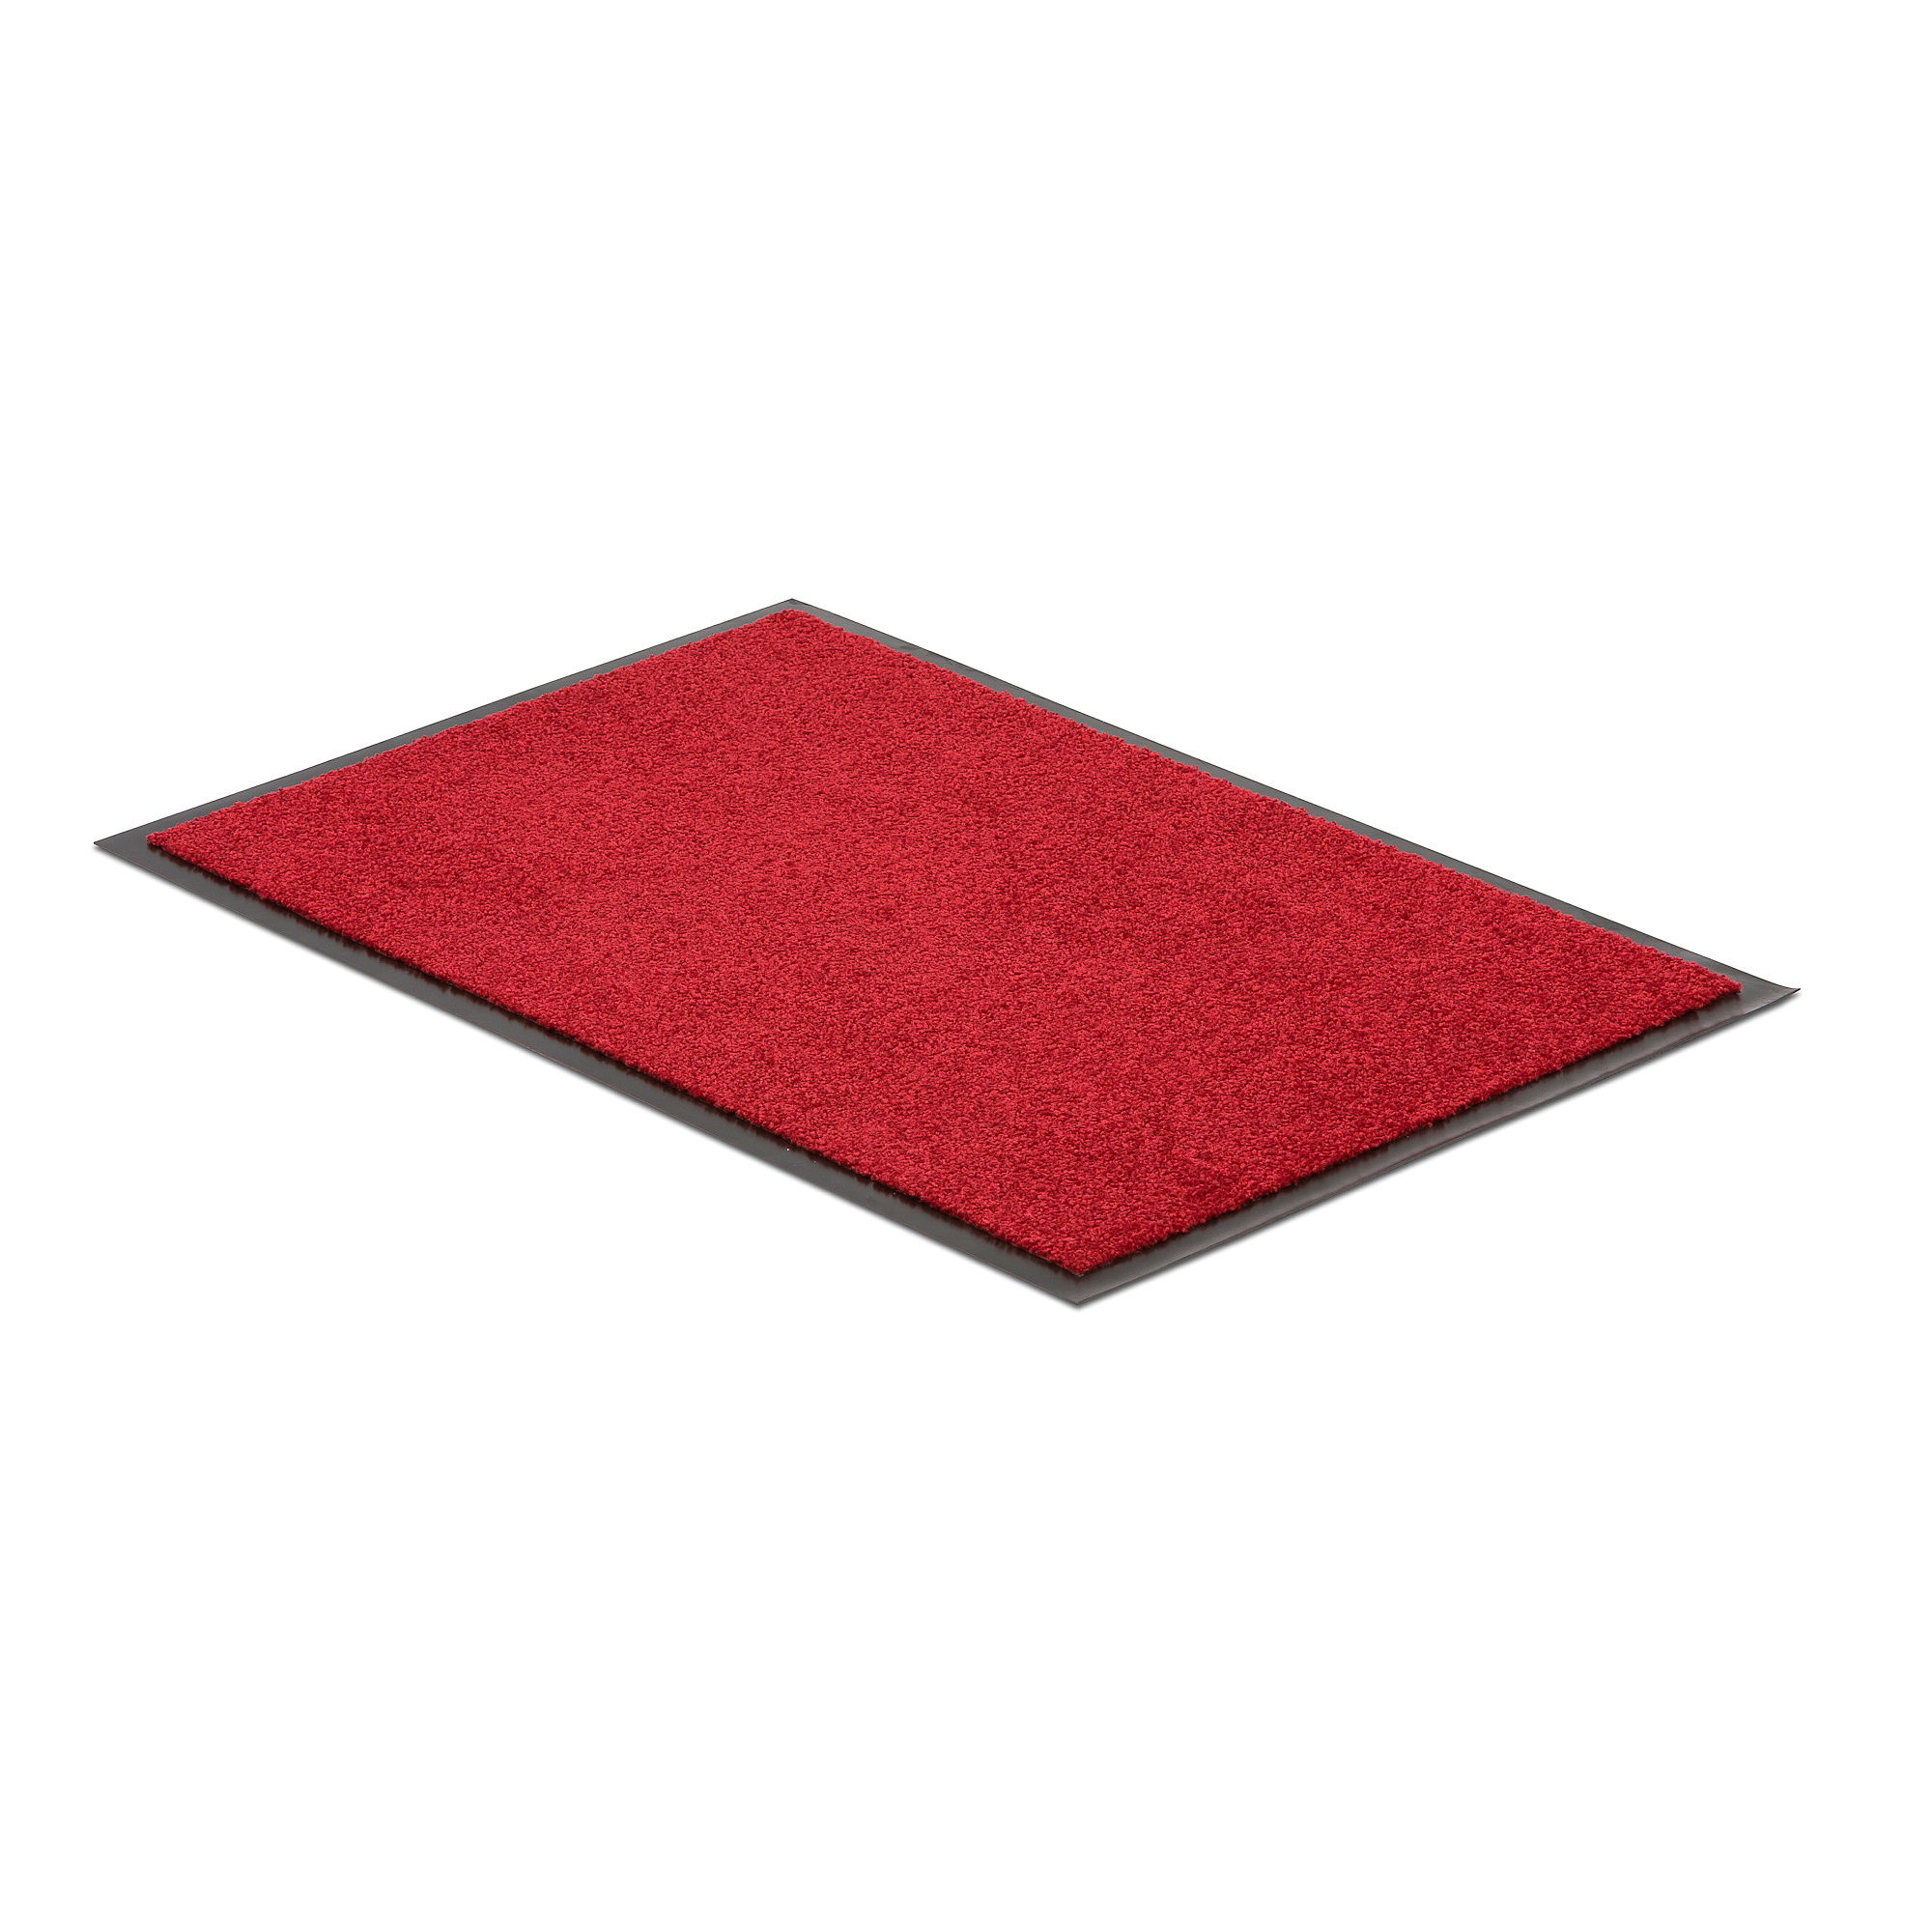 Vstupní rohož PURE, 900x600 mm, červená